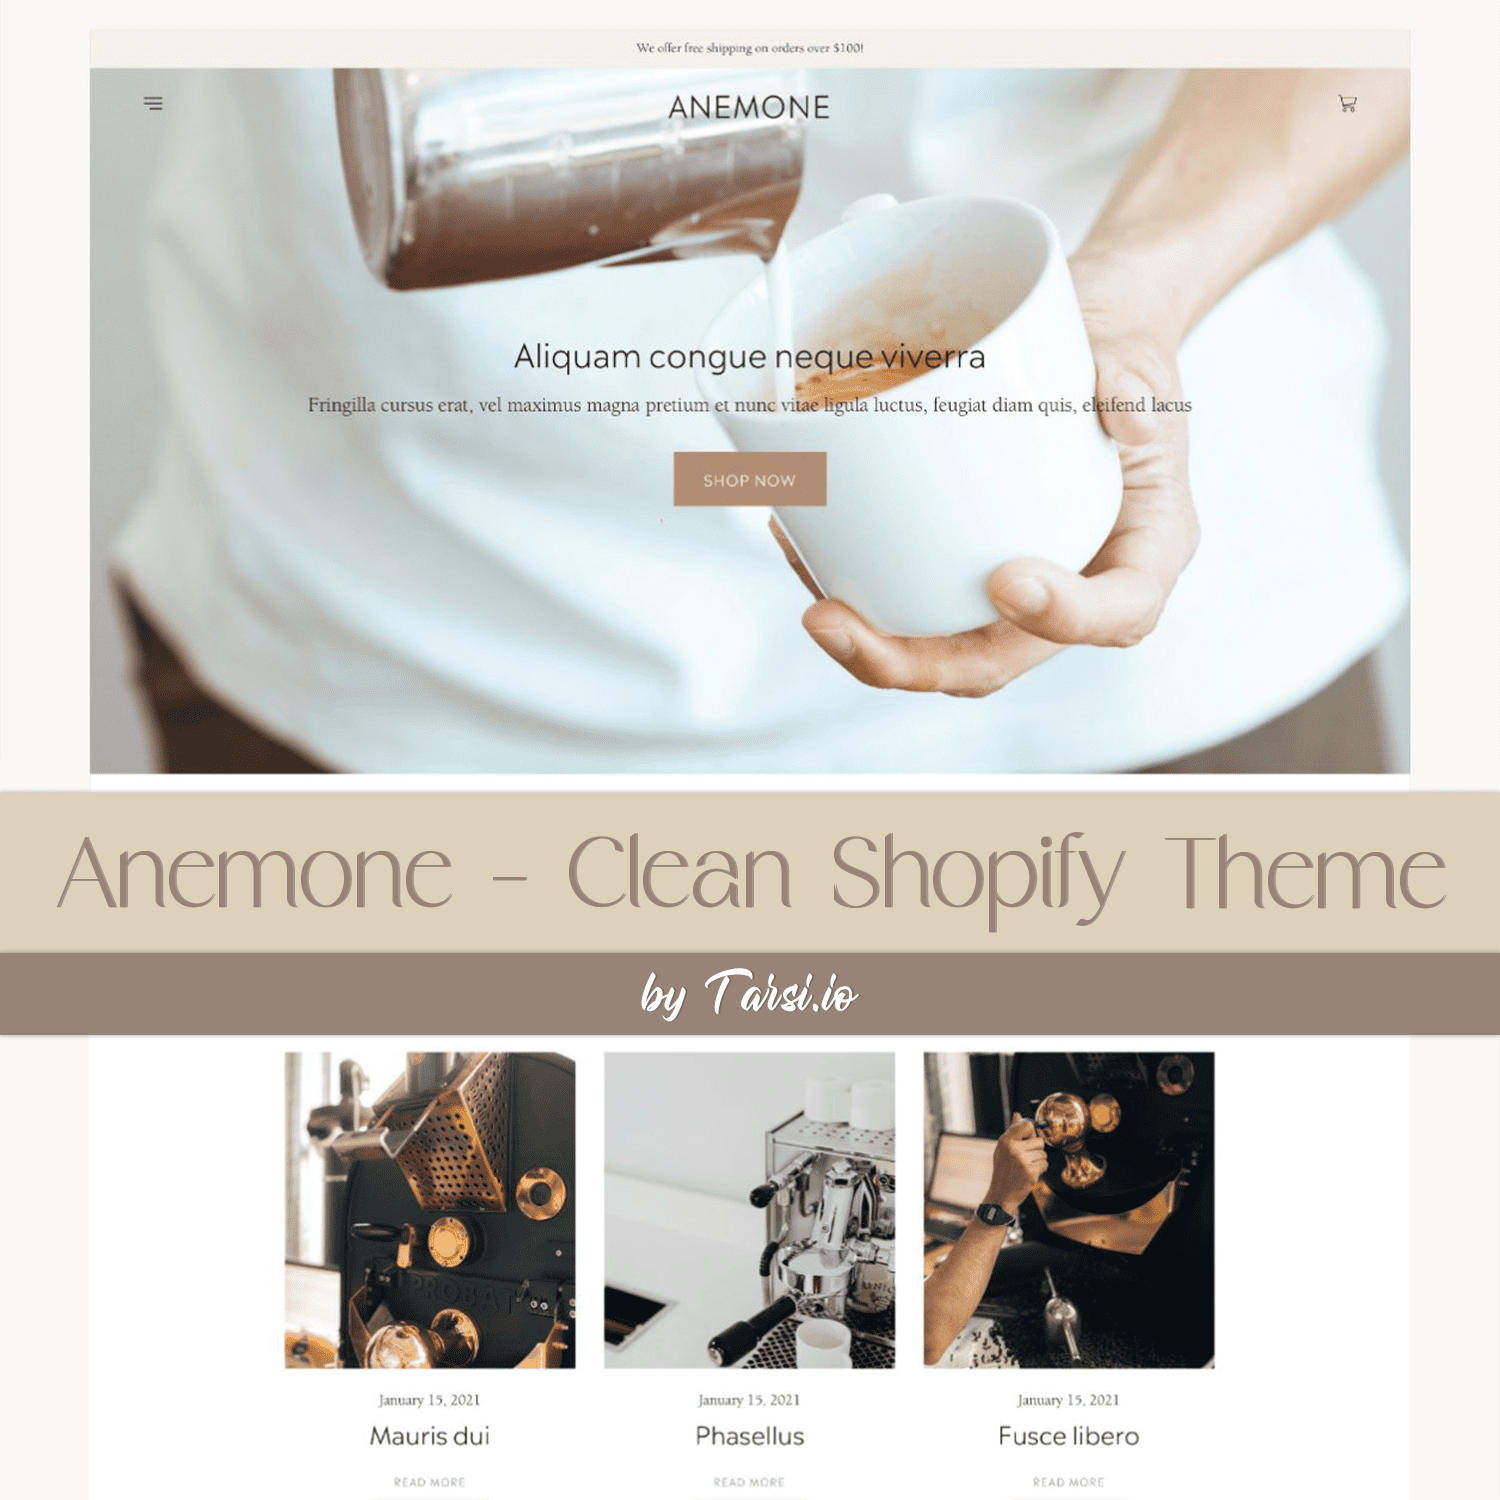 2.anemone clean shopify theme 1500x1500 245